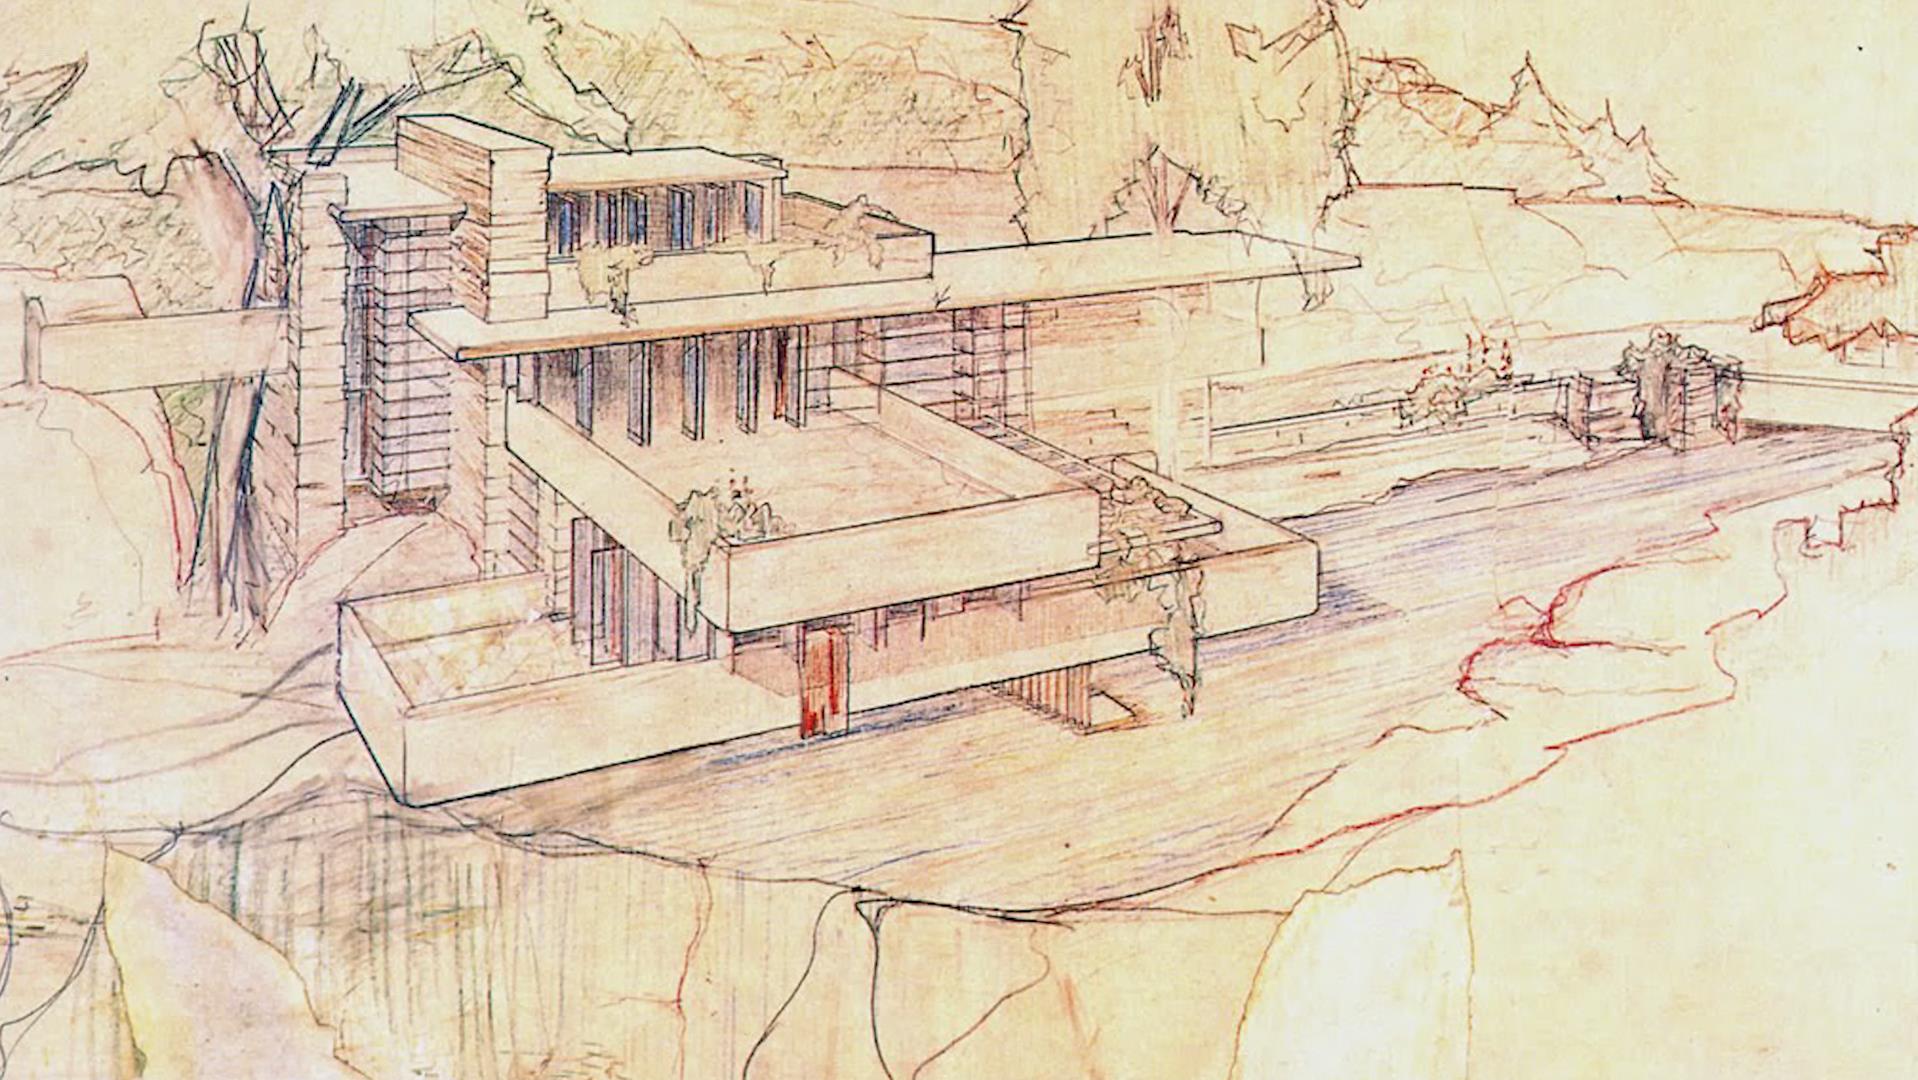 弗兰克·劳埃德·赖特,Frank Lloyd Wright,有机建筑,赖特建筑视频,赖特作品,流水别墅,田园学派,最伟大的美国建筑师